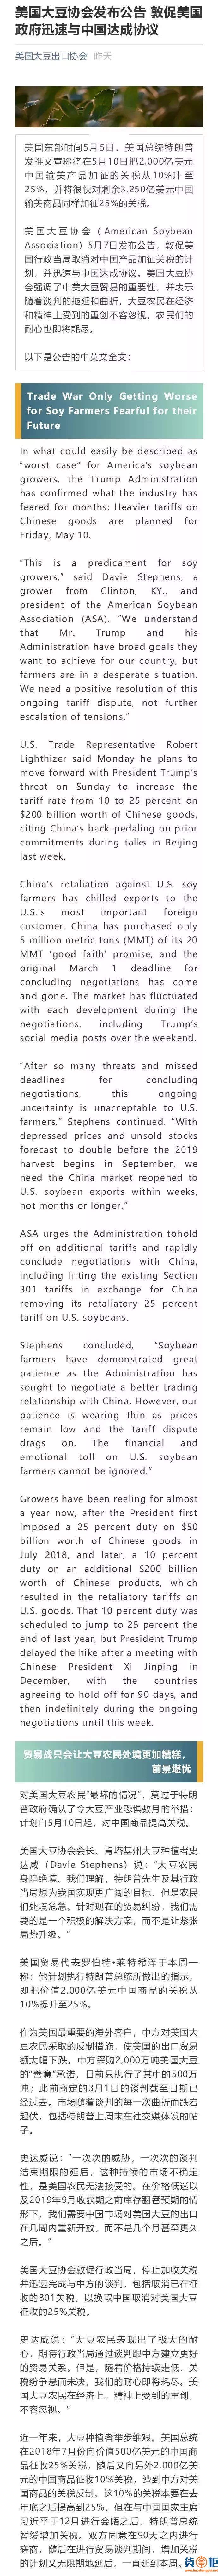 美国大豆协会、化学理事会都发声了，敦促美政府与中国达成协议